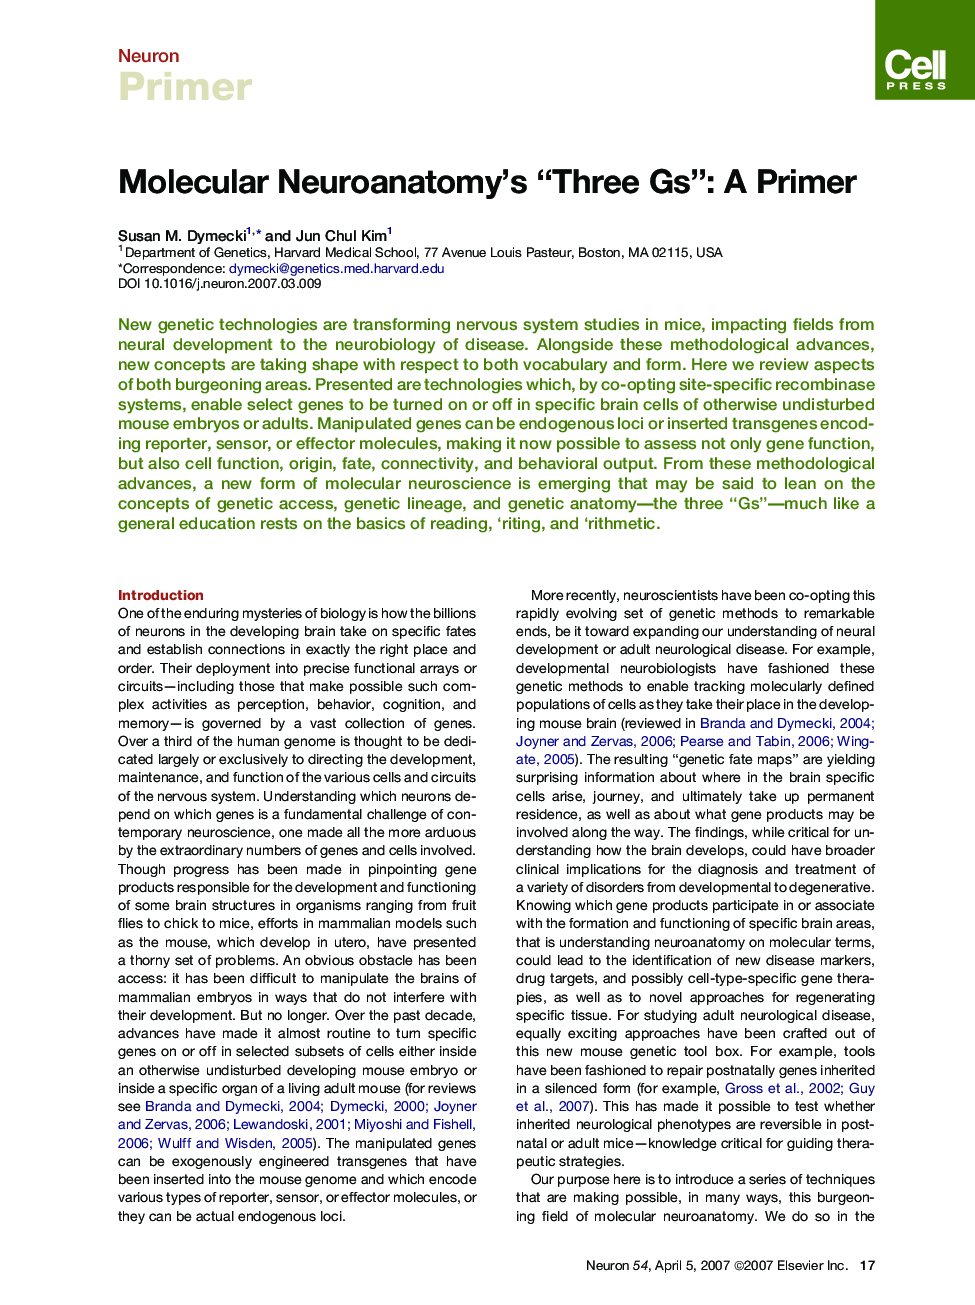 Molecular Neuroanatomy's “Three Gs”: A Primer